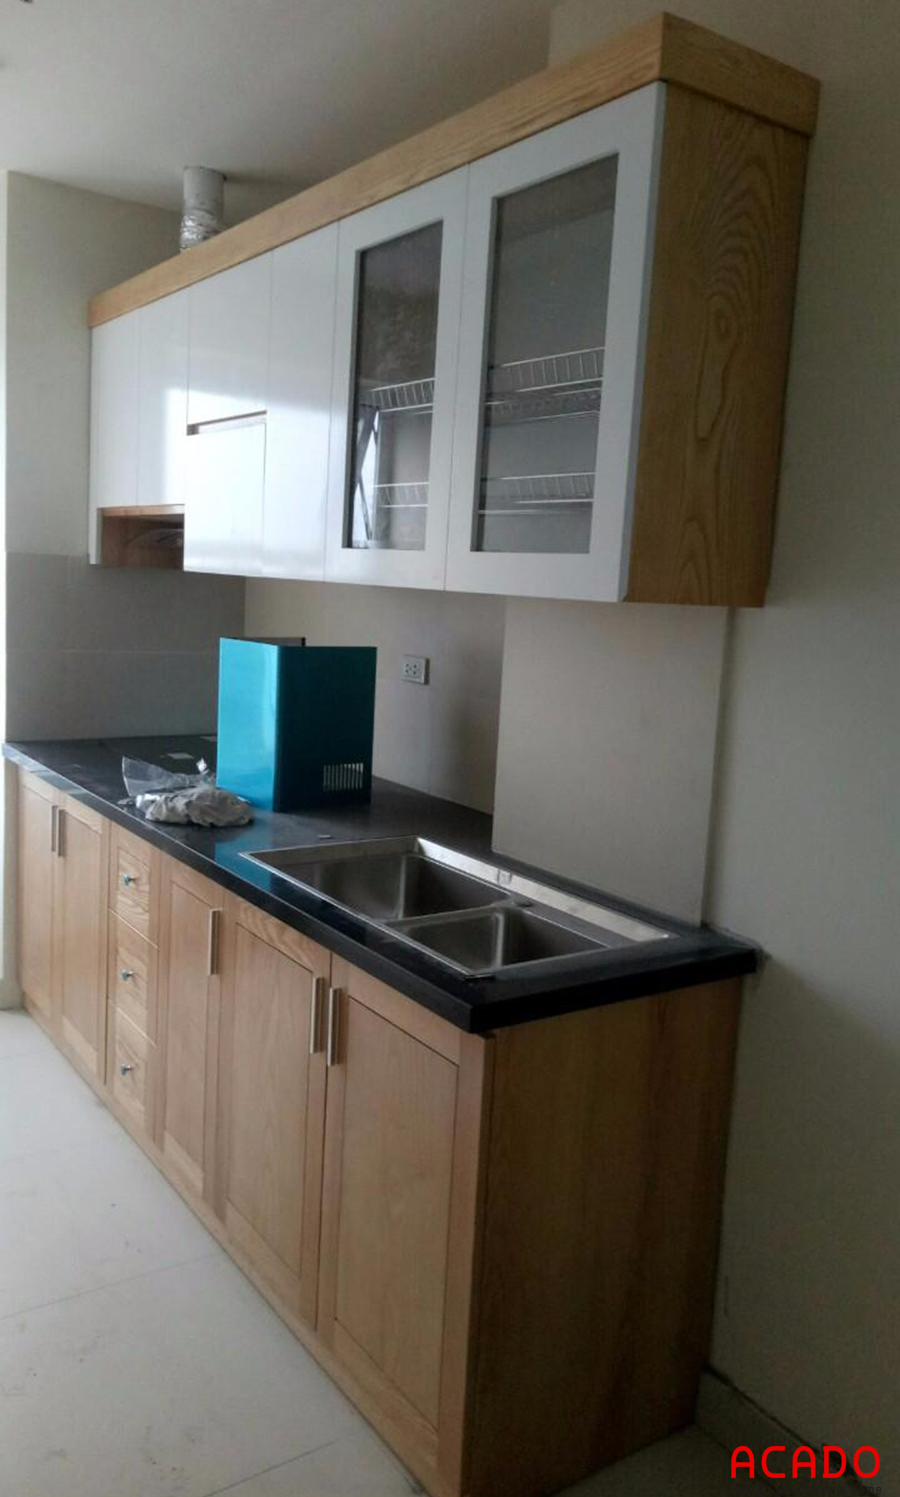 Tủ bếp được thiết kế nhỏ gọn phù hợp với không gian nhưng vẫn đầy đủ công năng.